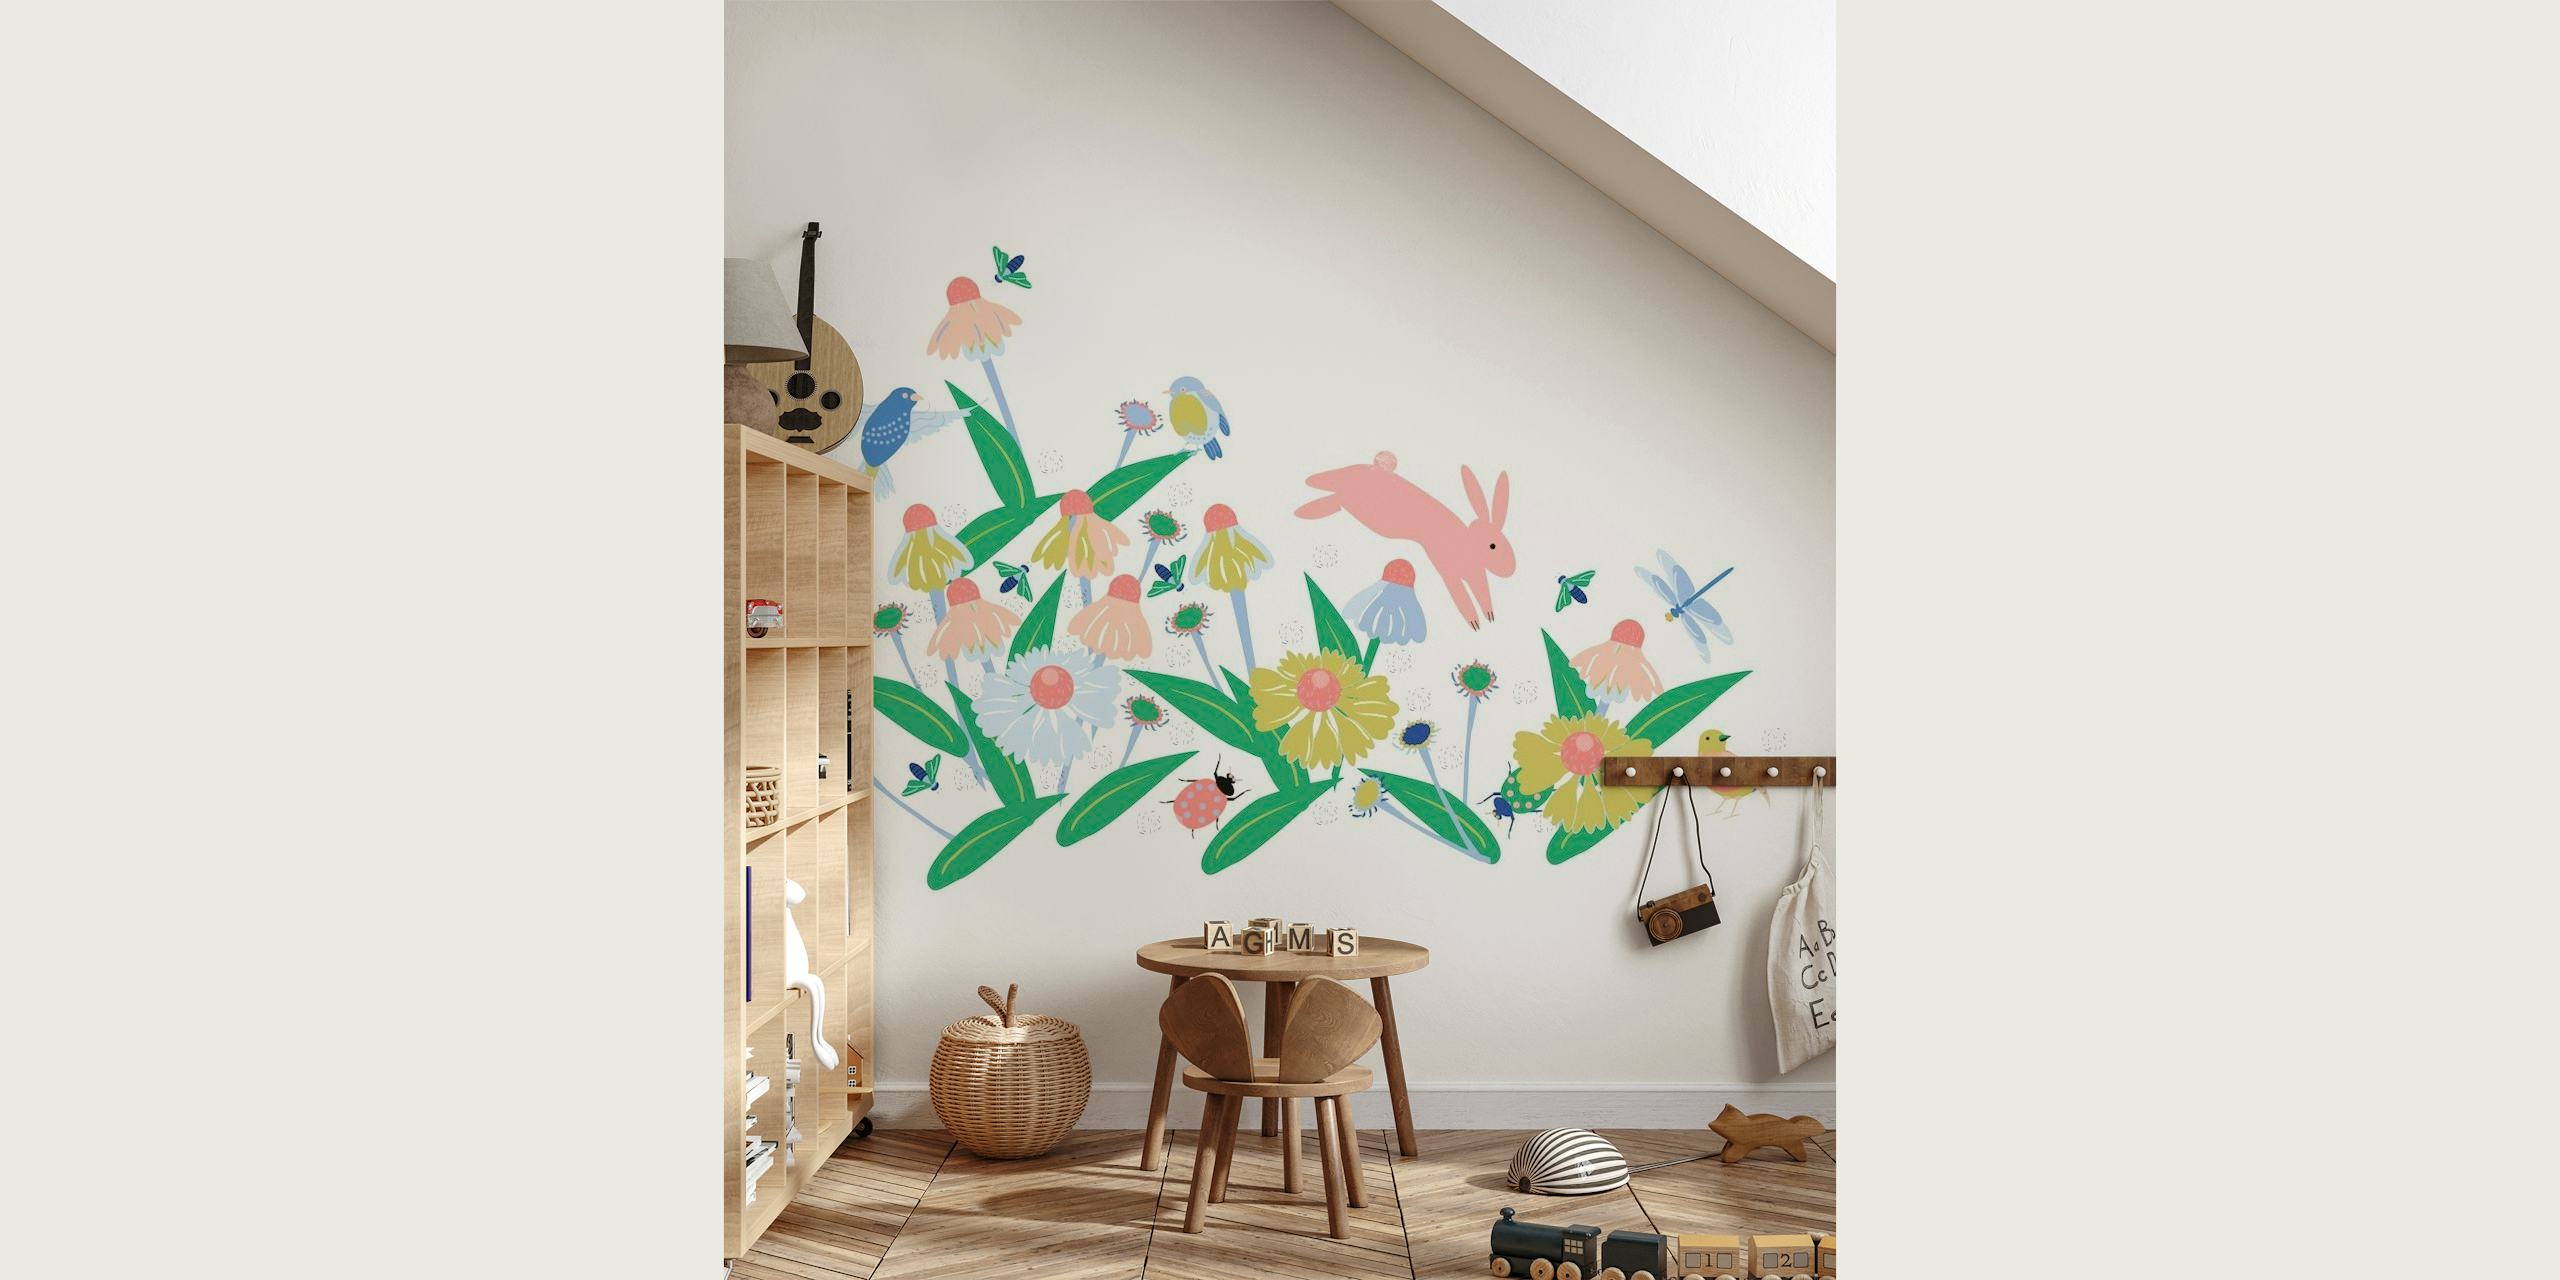 Pastelkleurige bloemenmuurschildering met vogels en vlinders